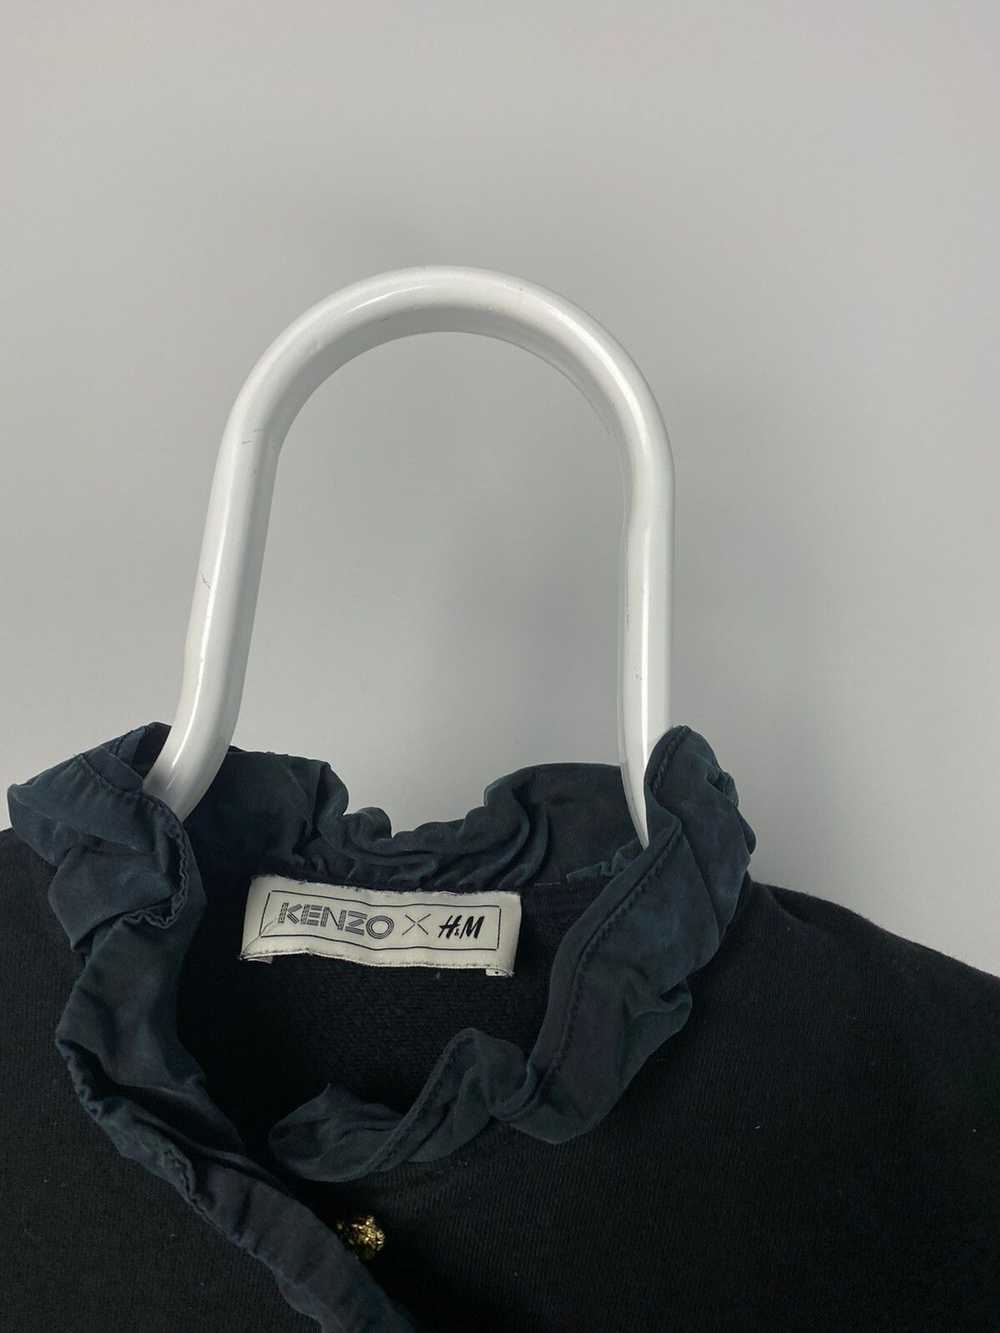 H&M × Kenzo Kenzo x HM black hoodie - image 3